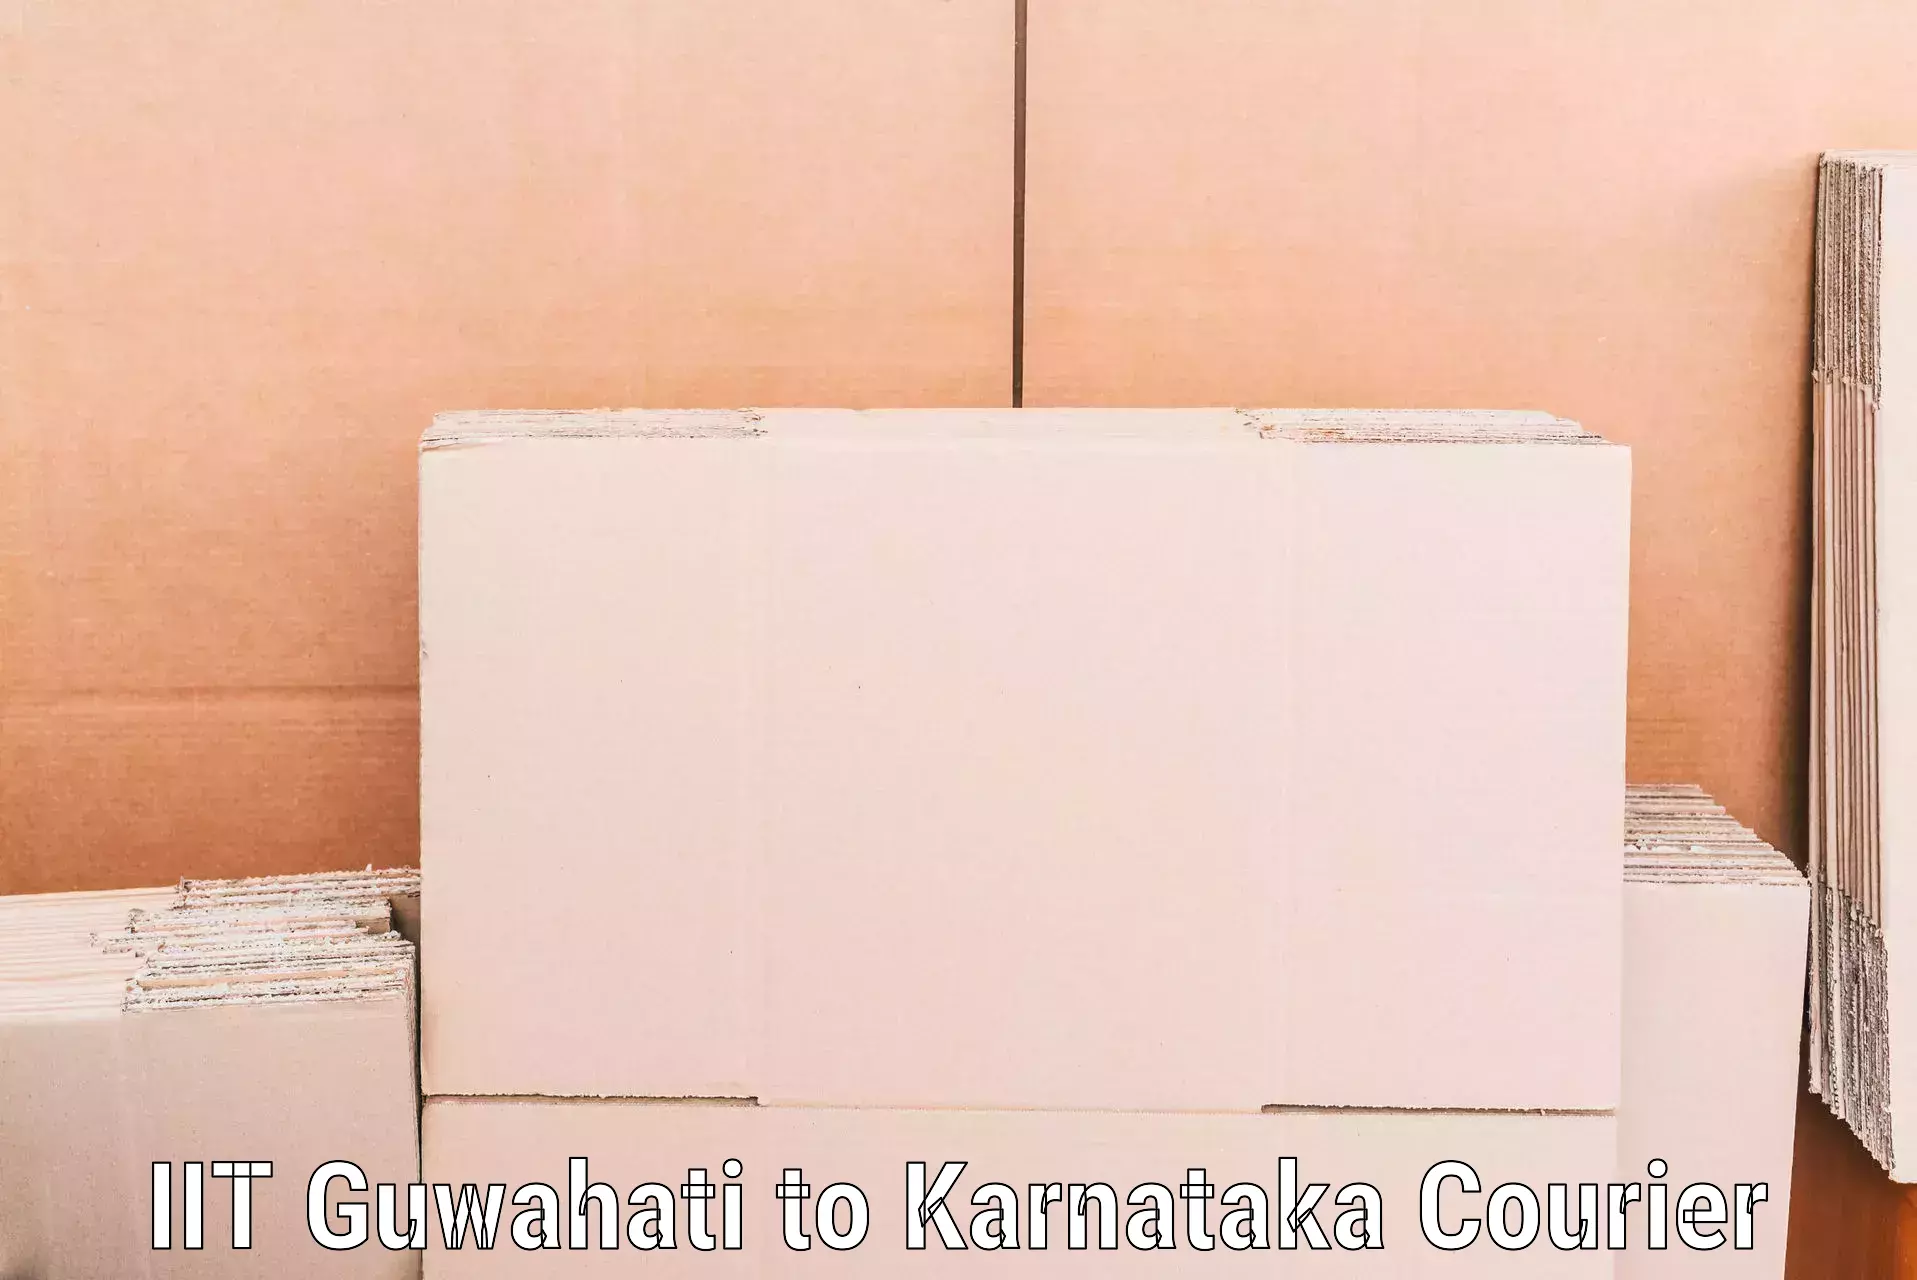 Expert moving and storage IIT Guwahati to Karnataka